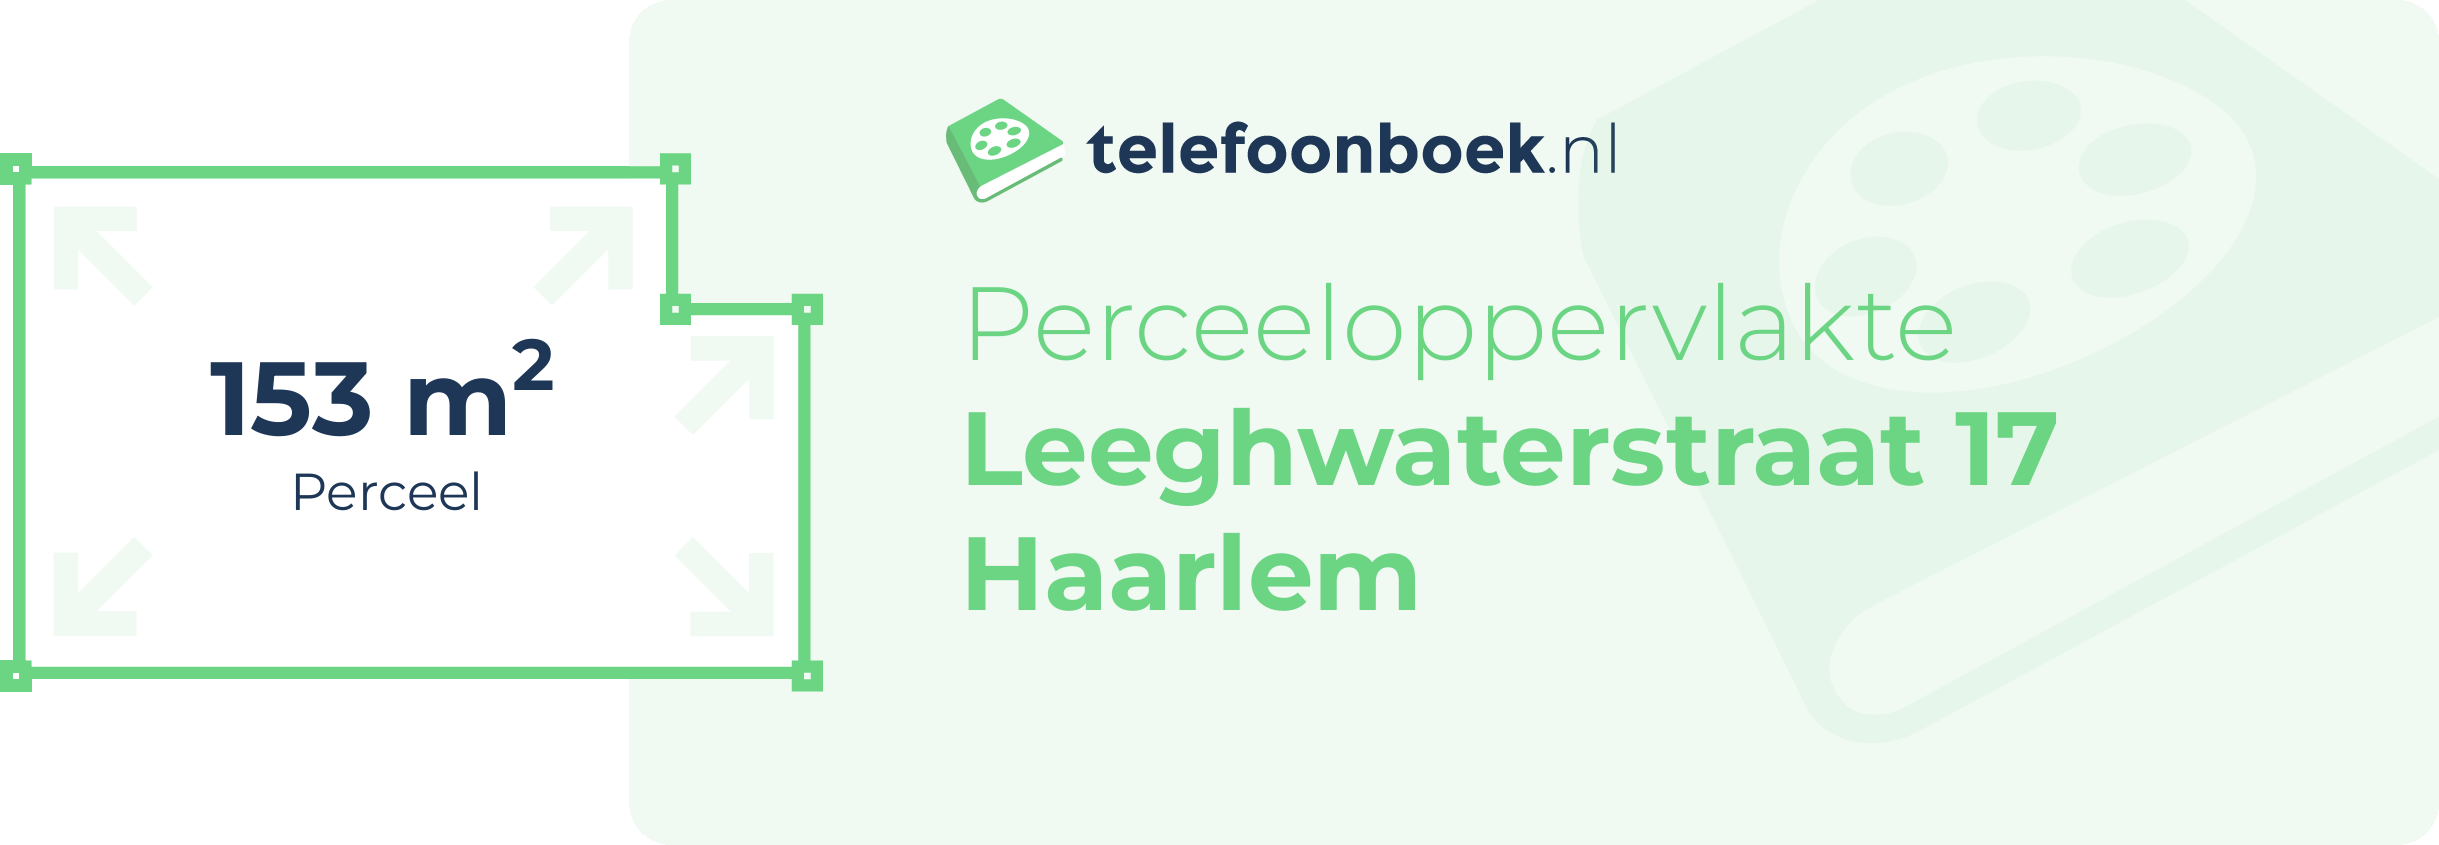 Perceeloppervlakte Leeghwaterstraat 17 Haarlem